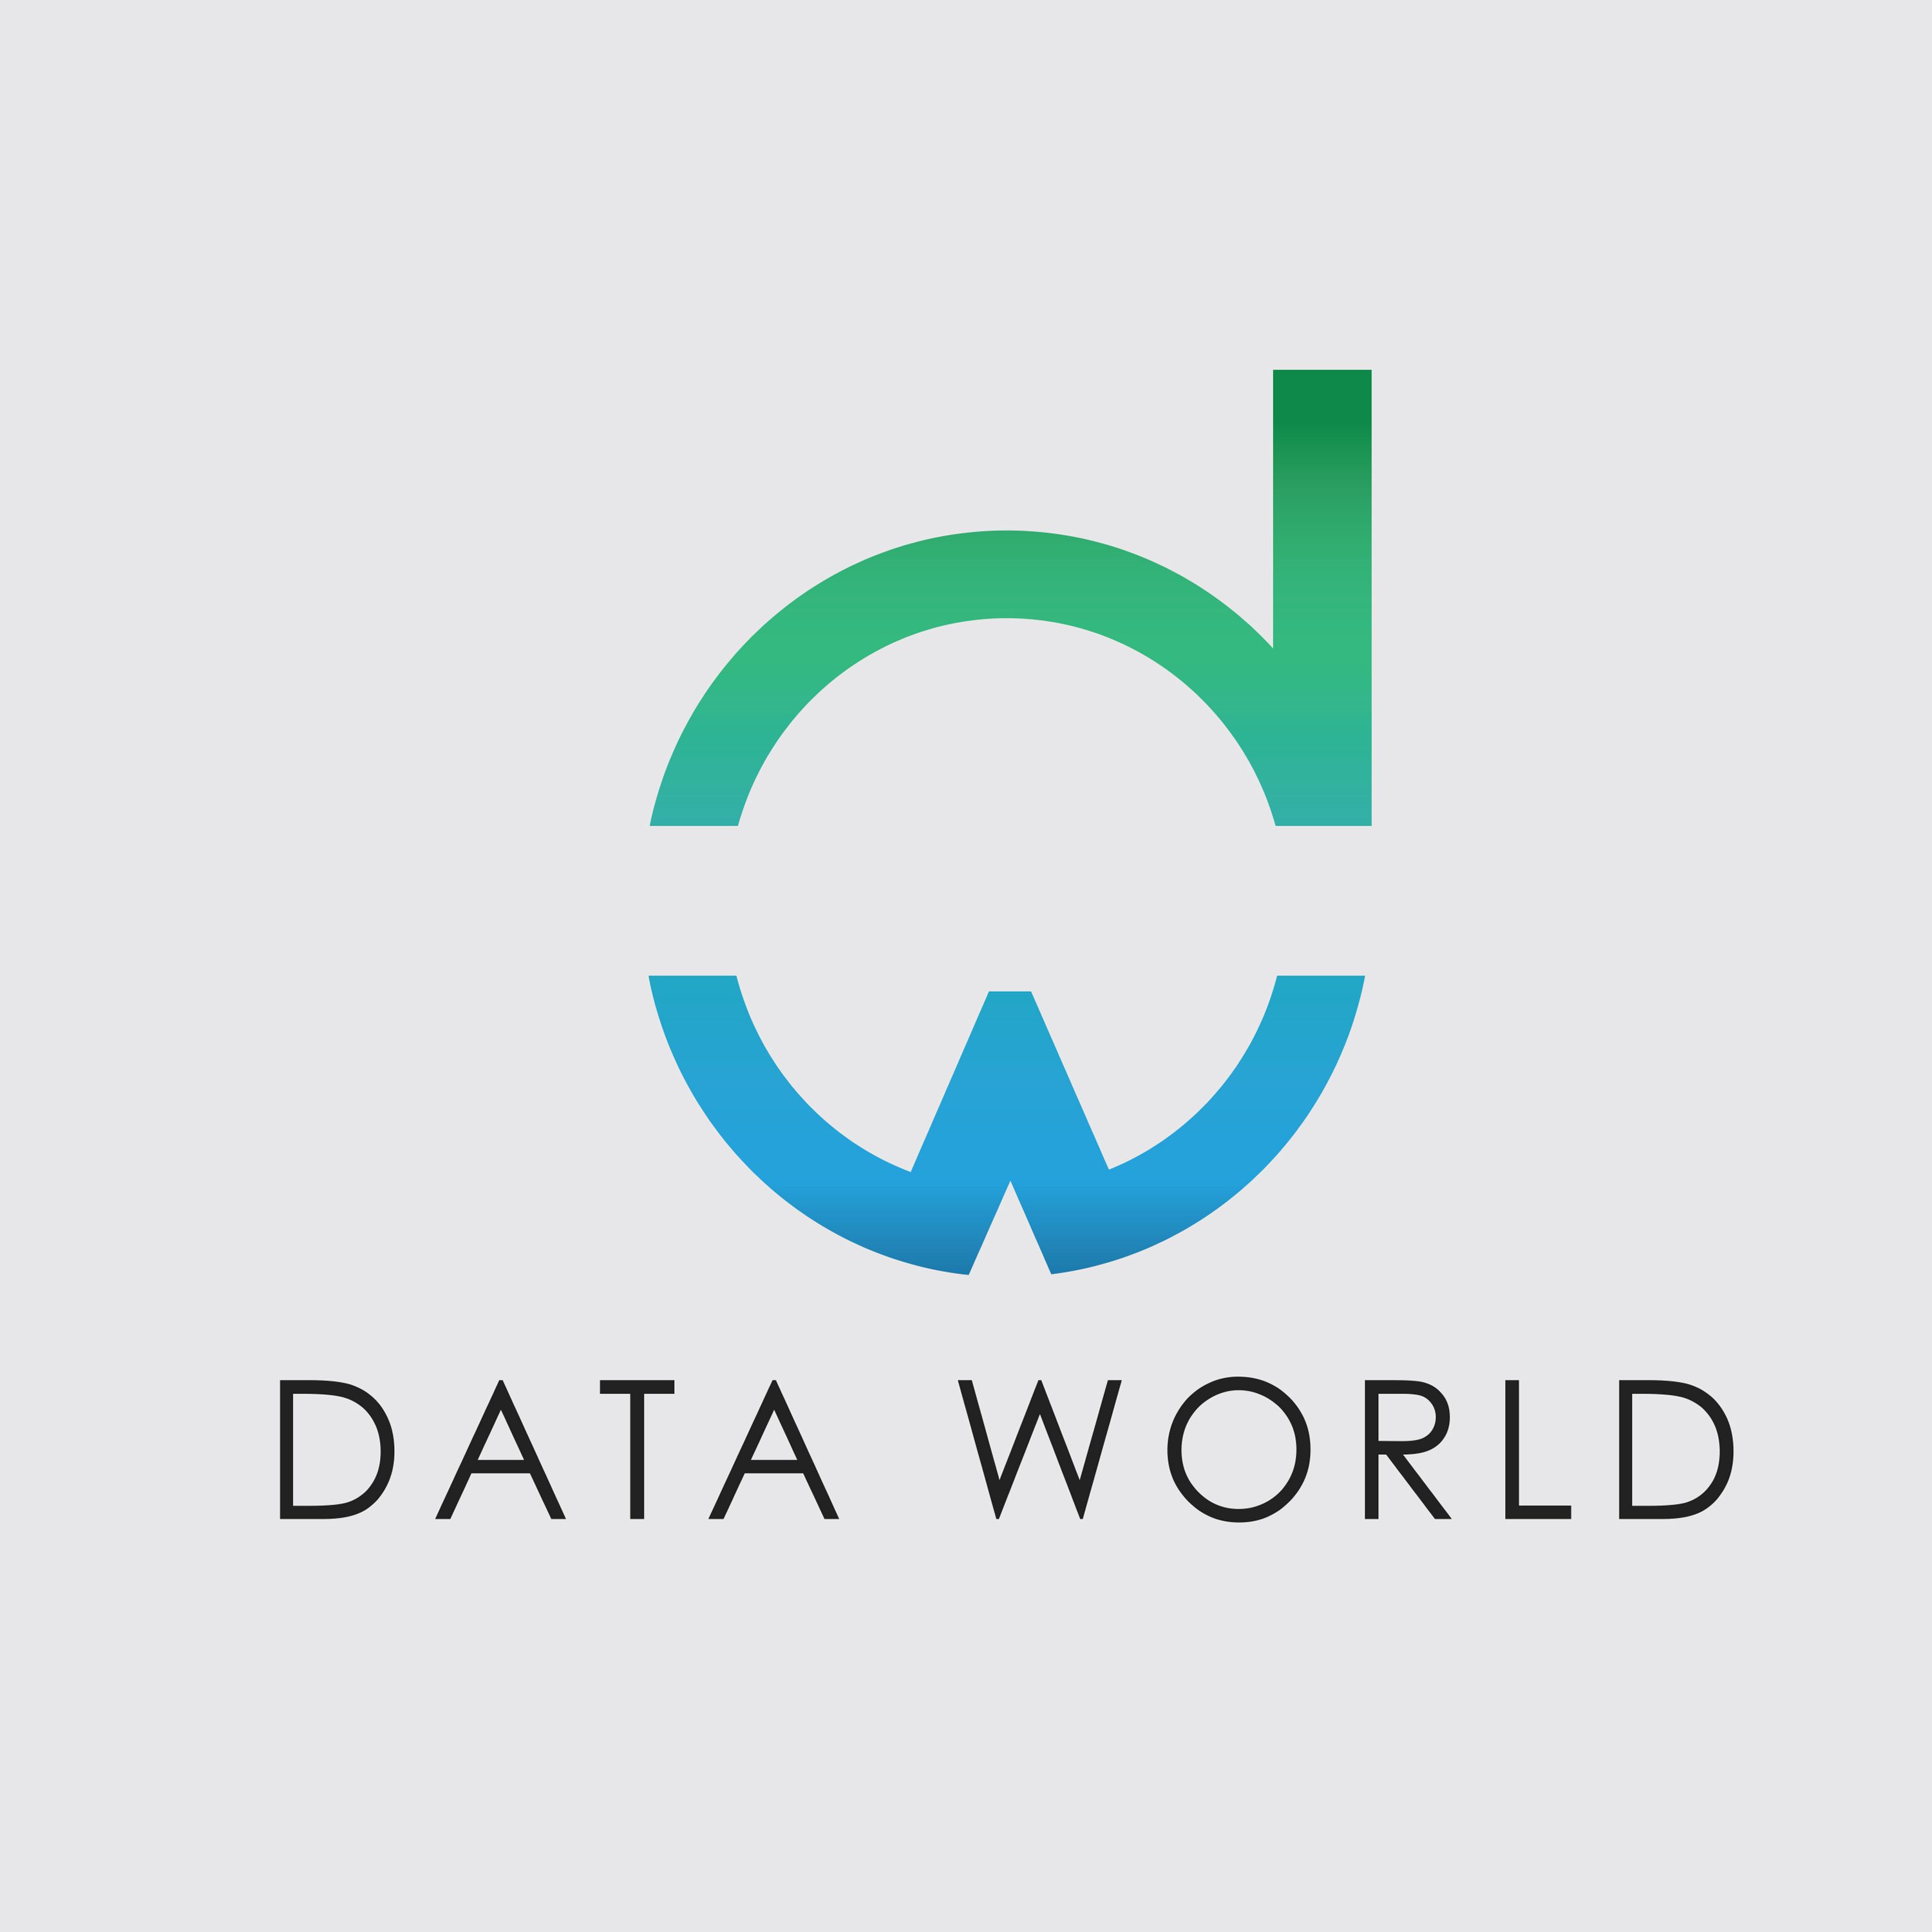 DATA WORLD